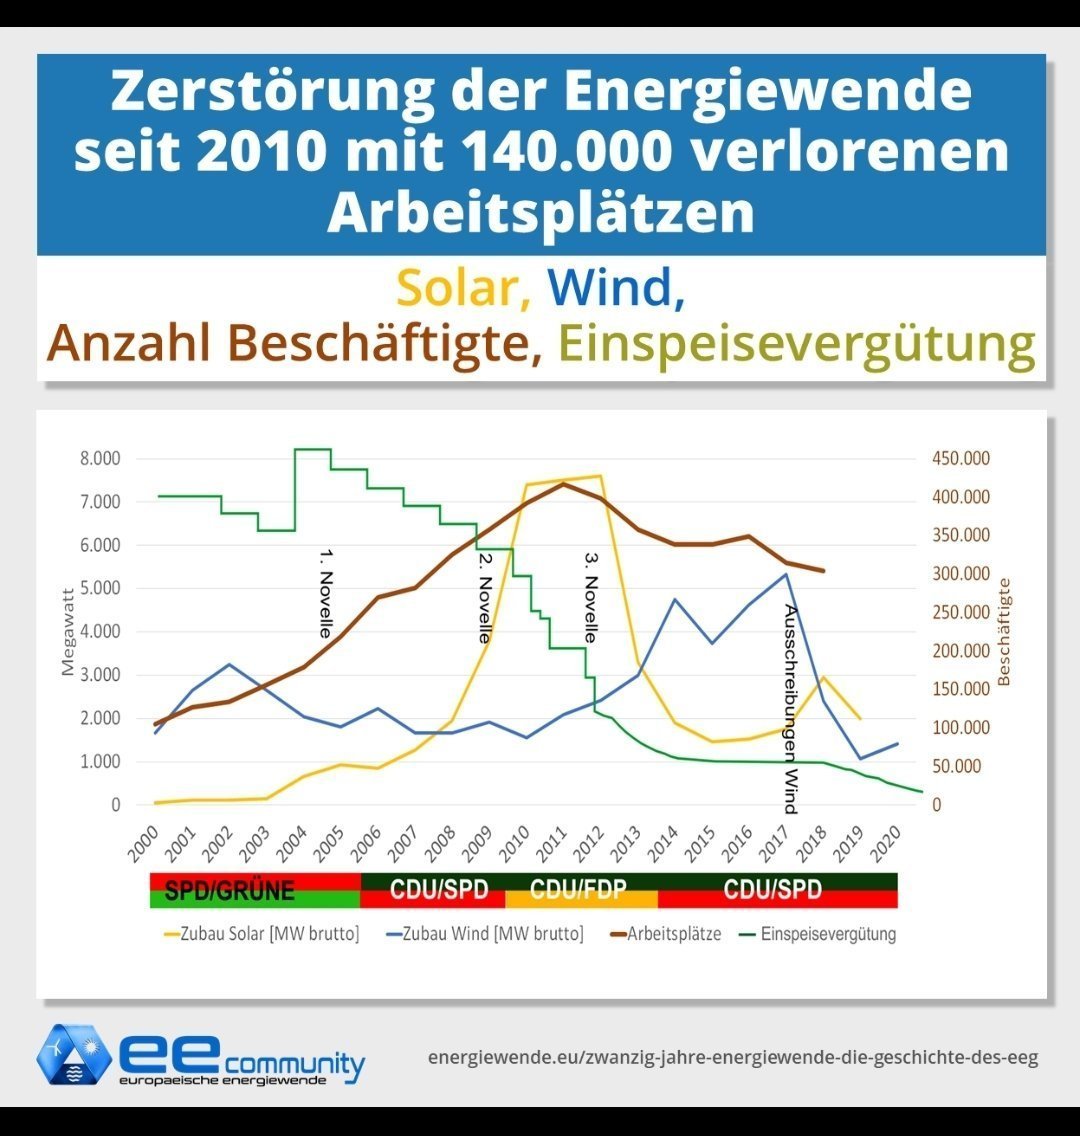 Den Niedergang der Solarindustrie haben wir #Merkel und #altmaier zu verdanken
#NiemehrCDUCSU